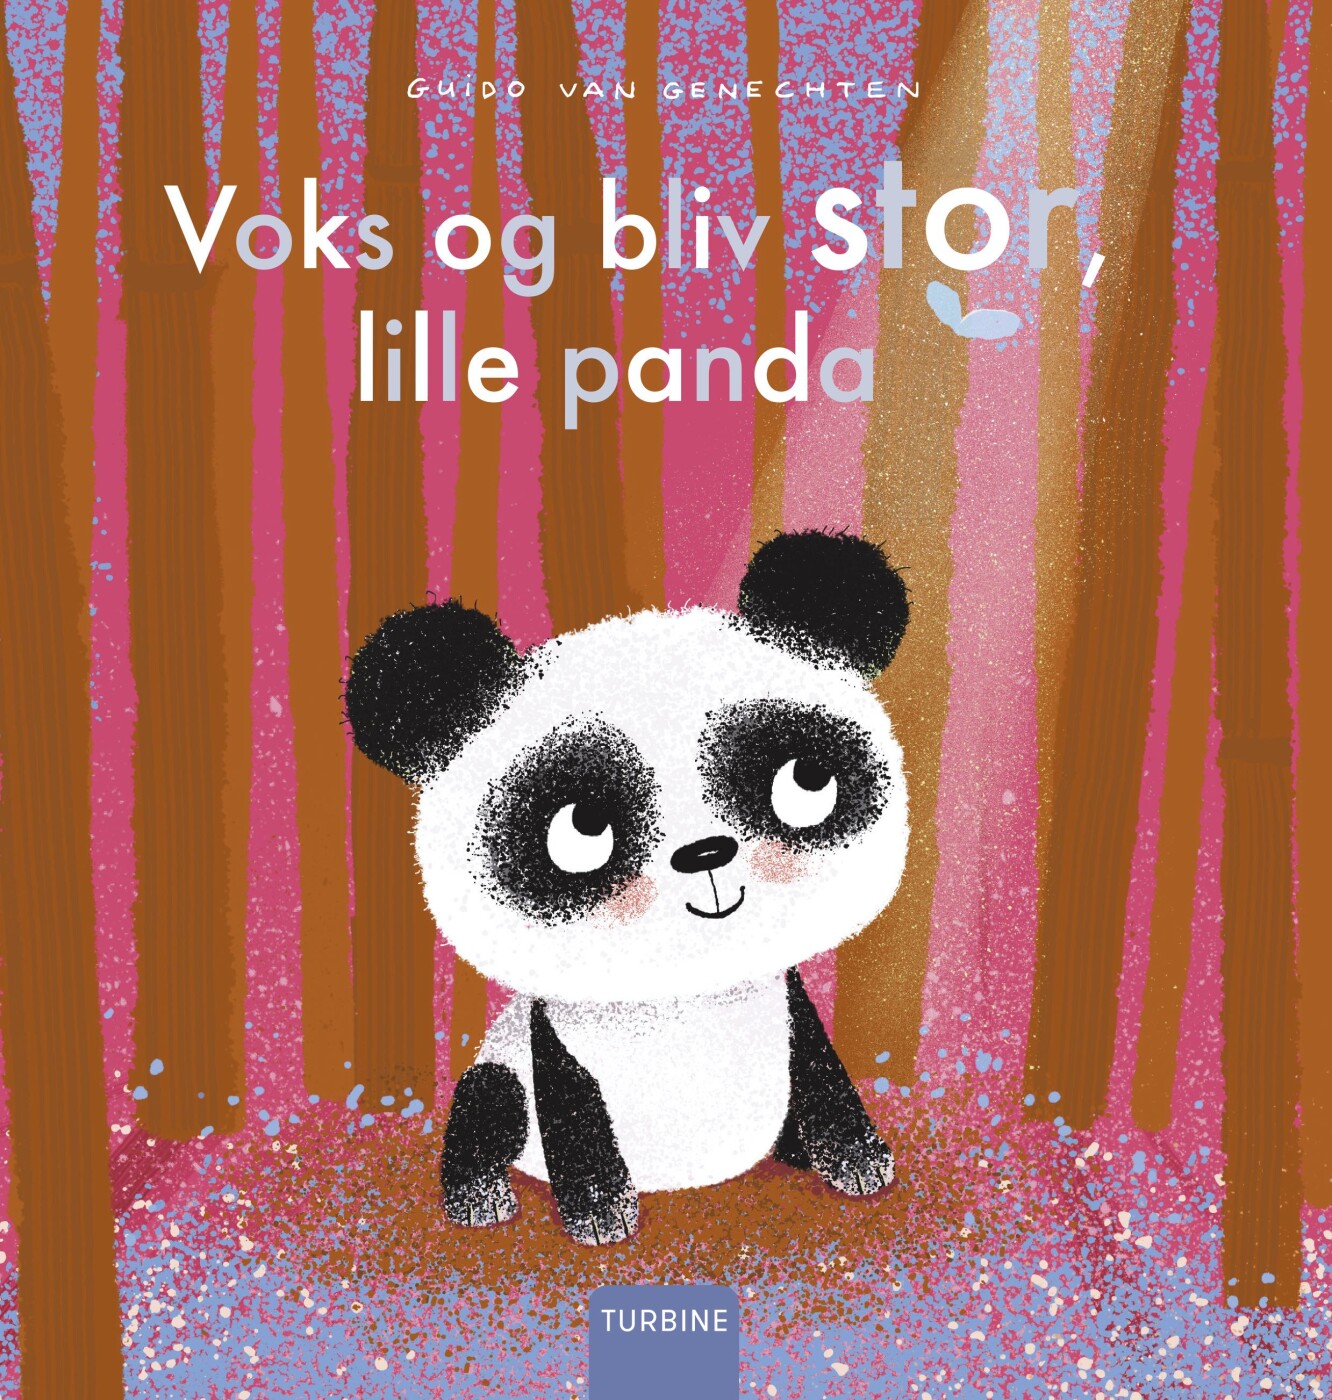 Voks Og Bliv Stor, Lille Panda - Guido Van Genechten - Bog